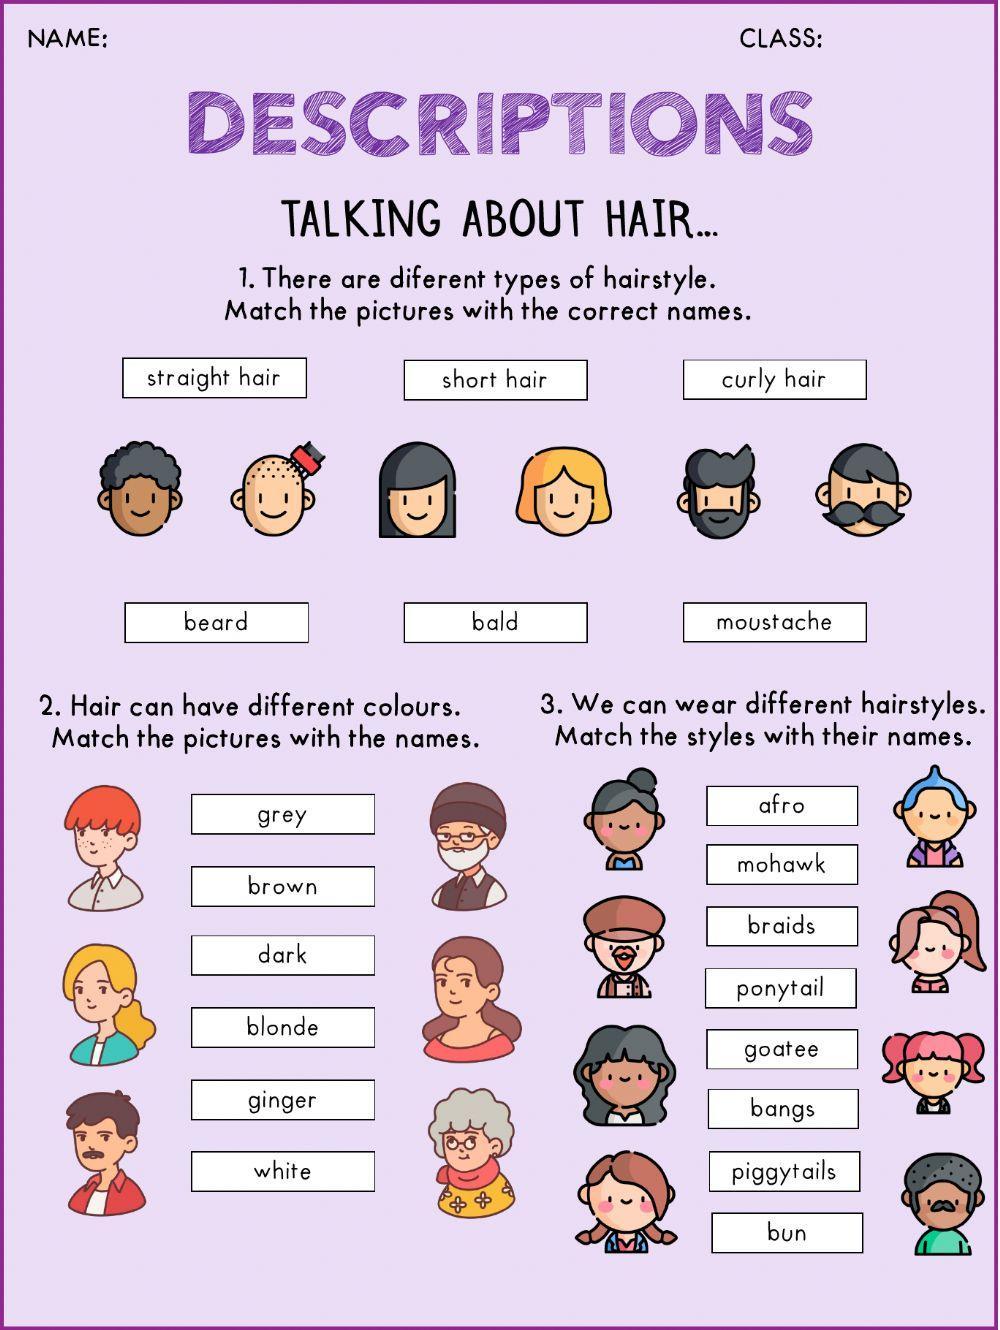 Describing: hair